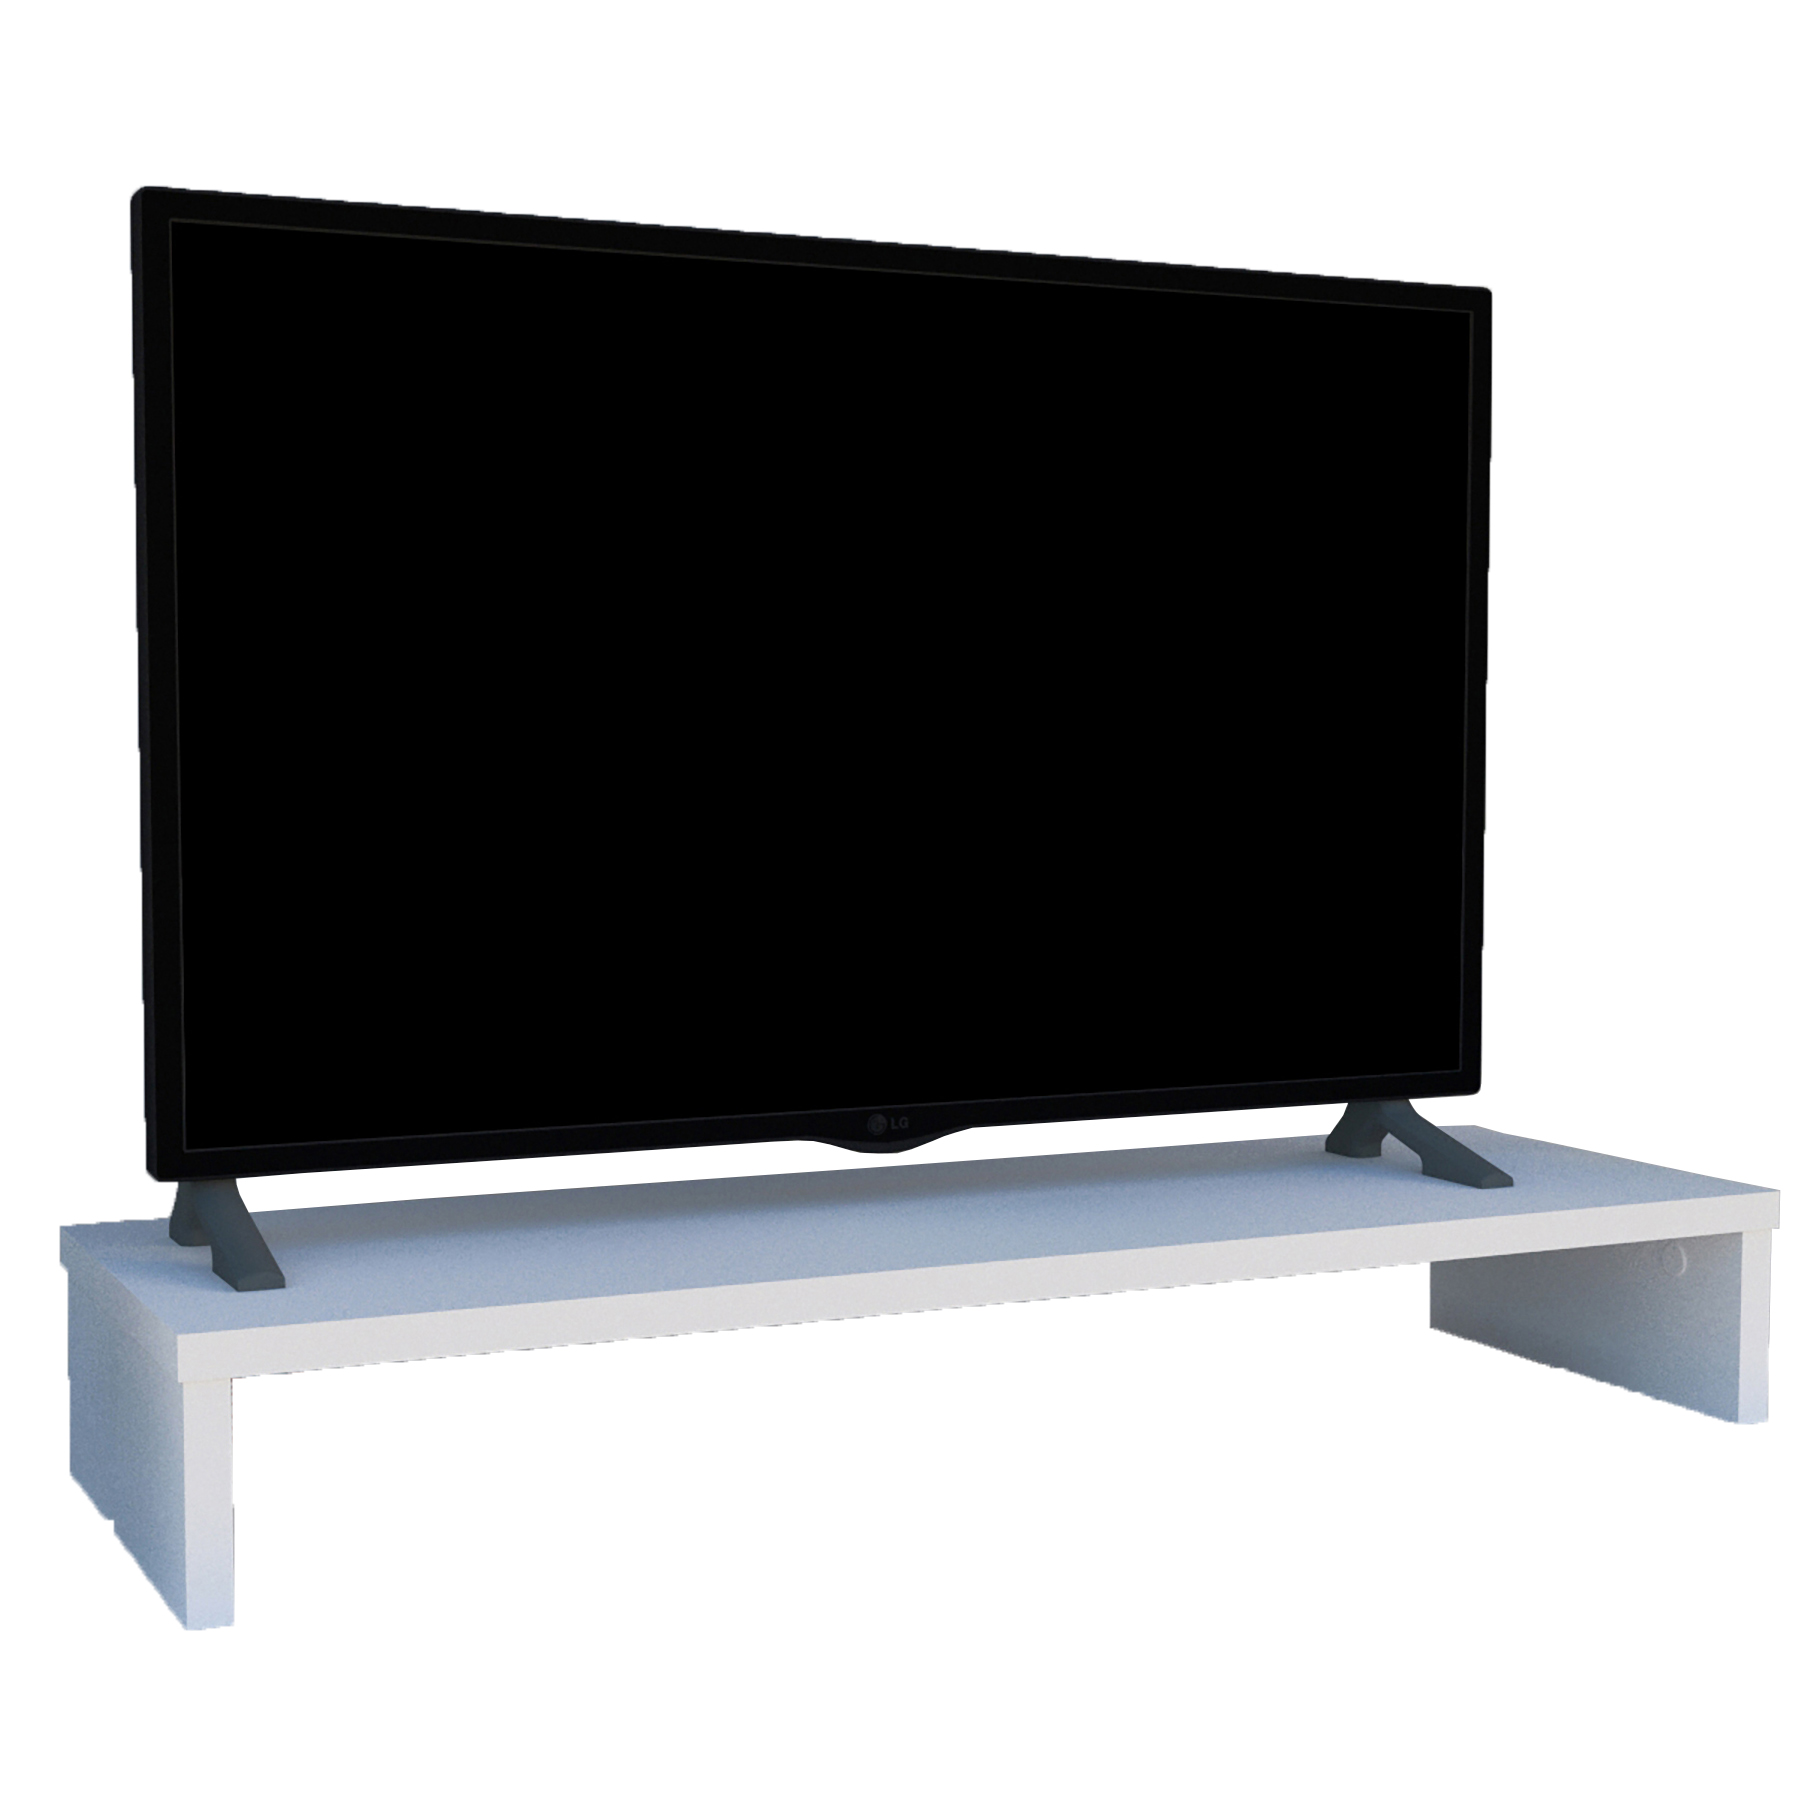 Henor Soporte Madera FSC® Monitor Elevador TV 62 x 26.5 x 12 cm Soporta 50  Kg. Blanco : : Electrónica